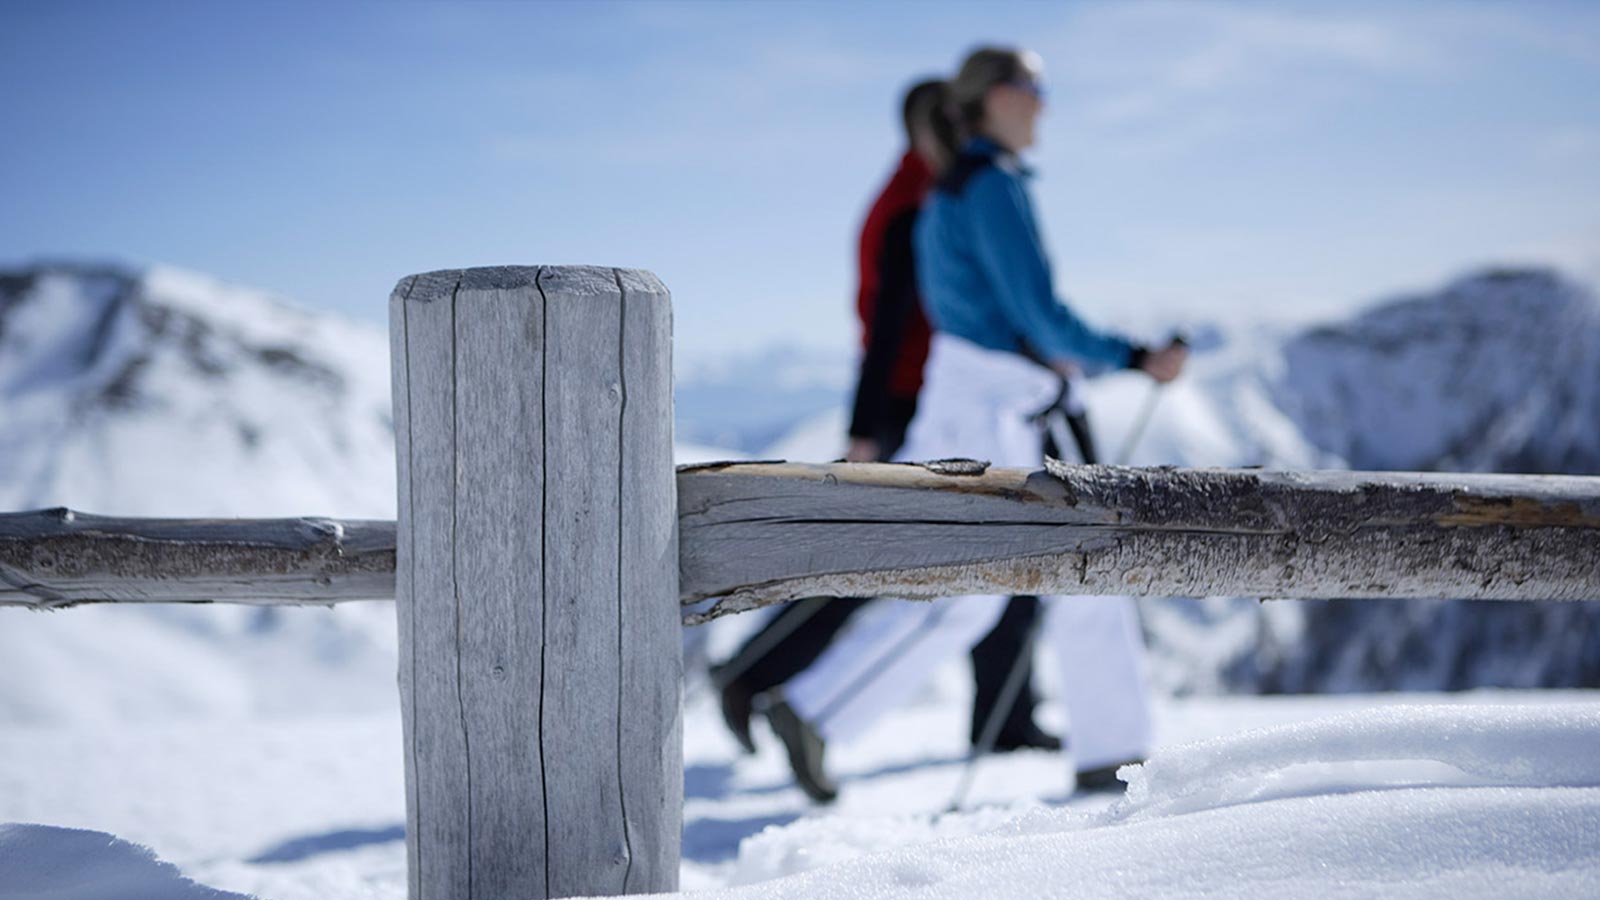 Dettaglio di uno steccato con una coppia che cammina sulla neve sullo sfondo